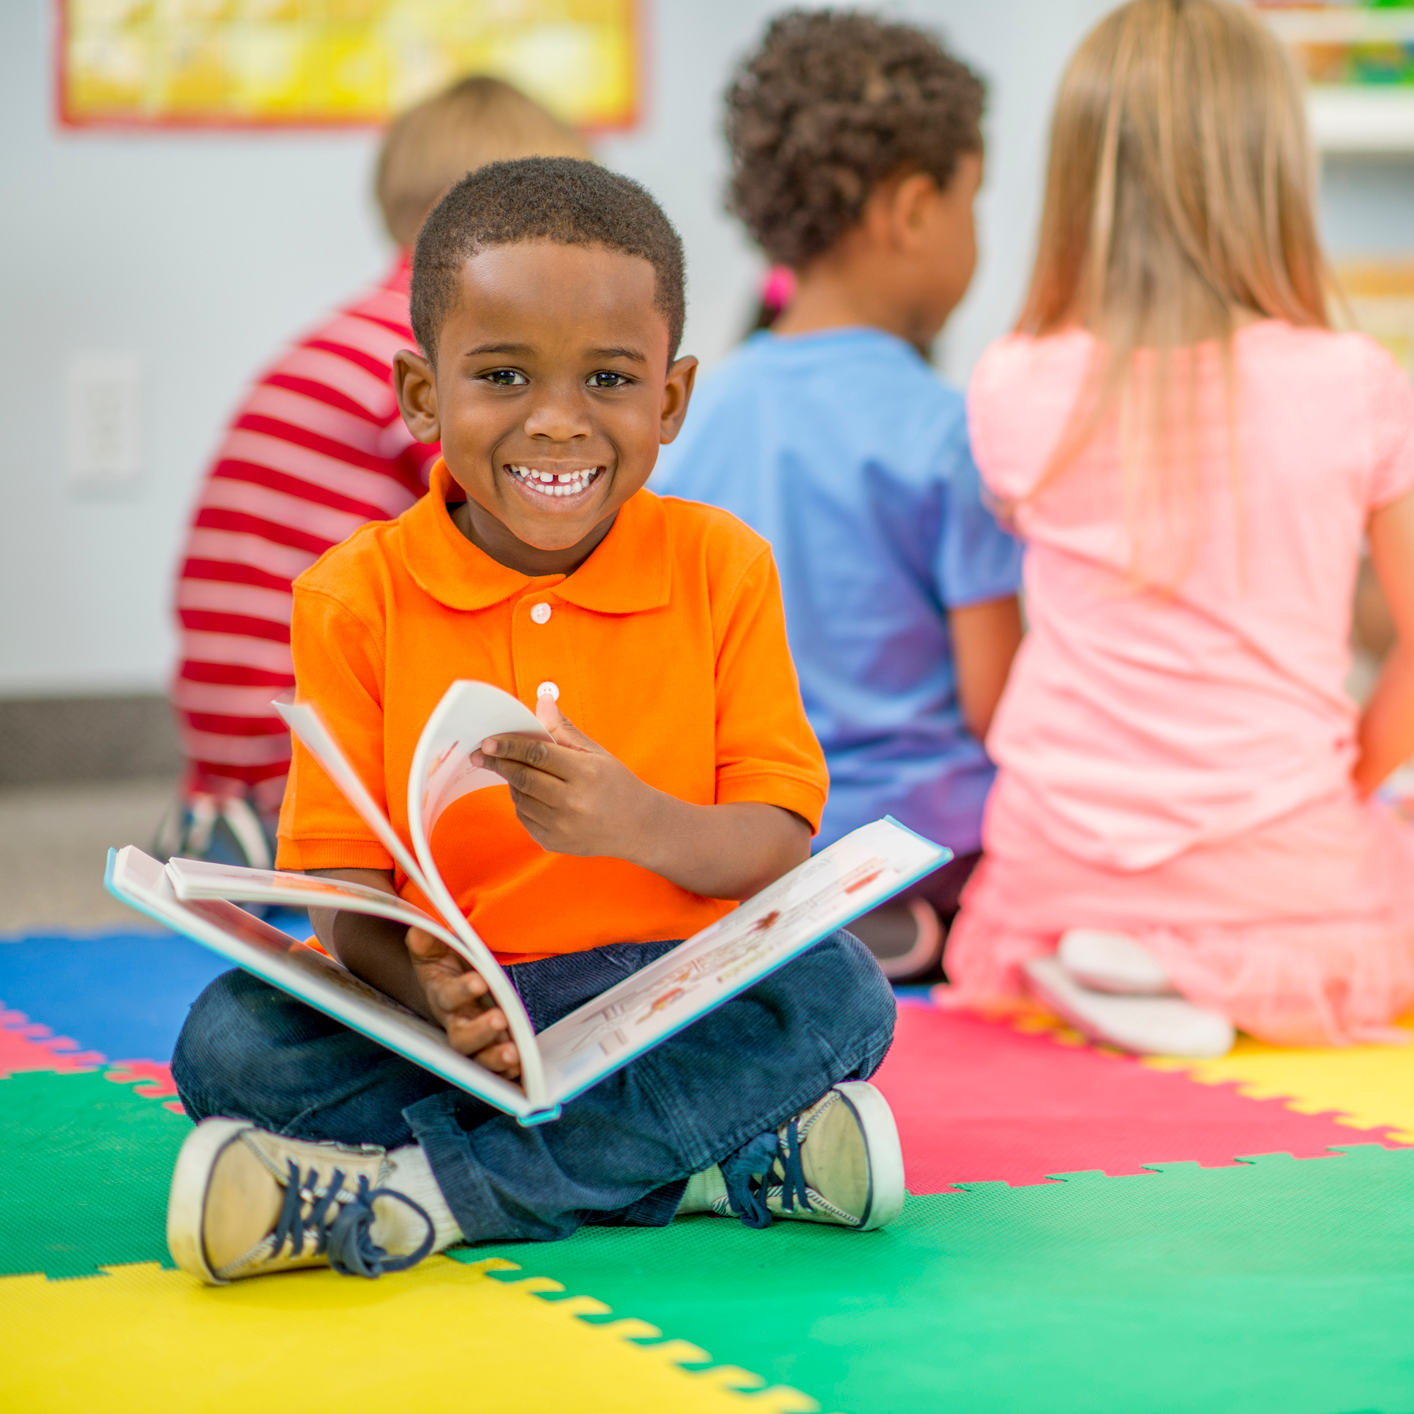 Preschooler reading a book in the classroom.